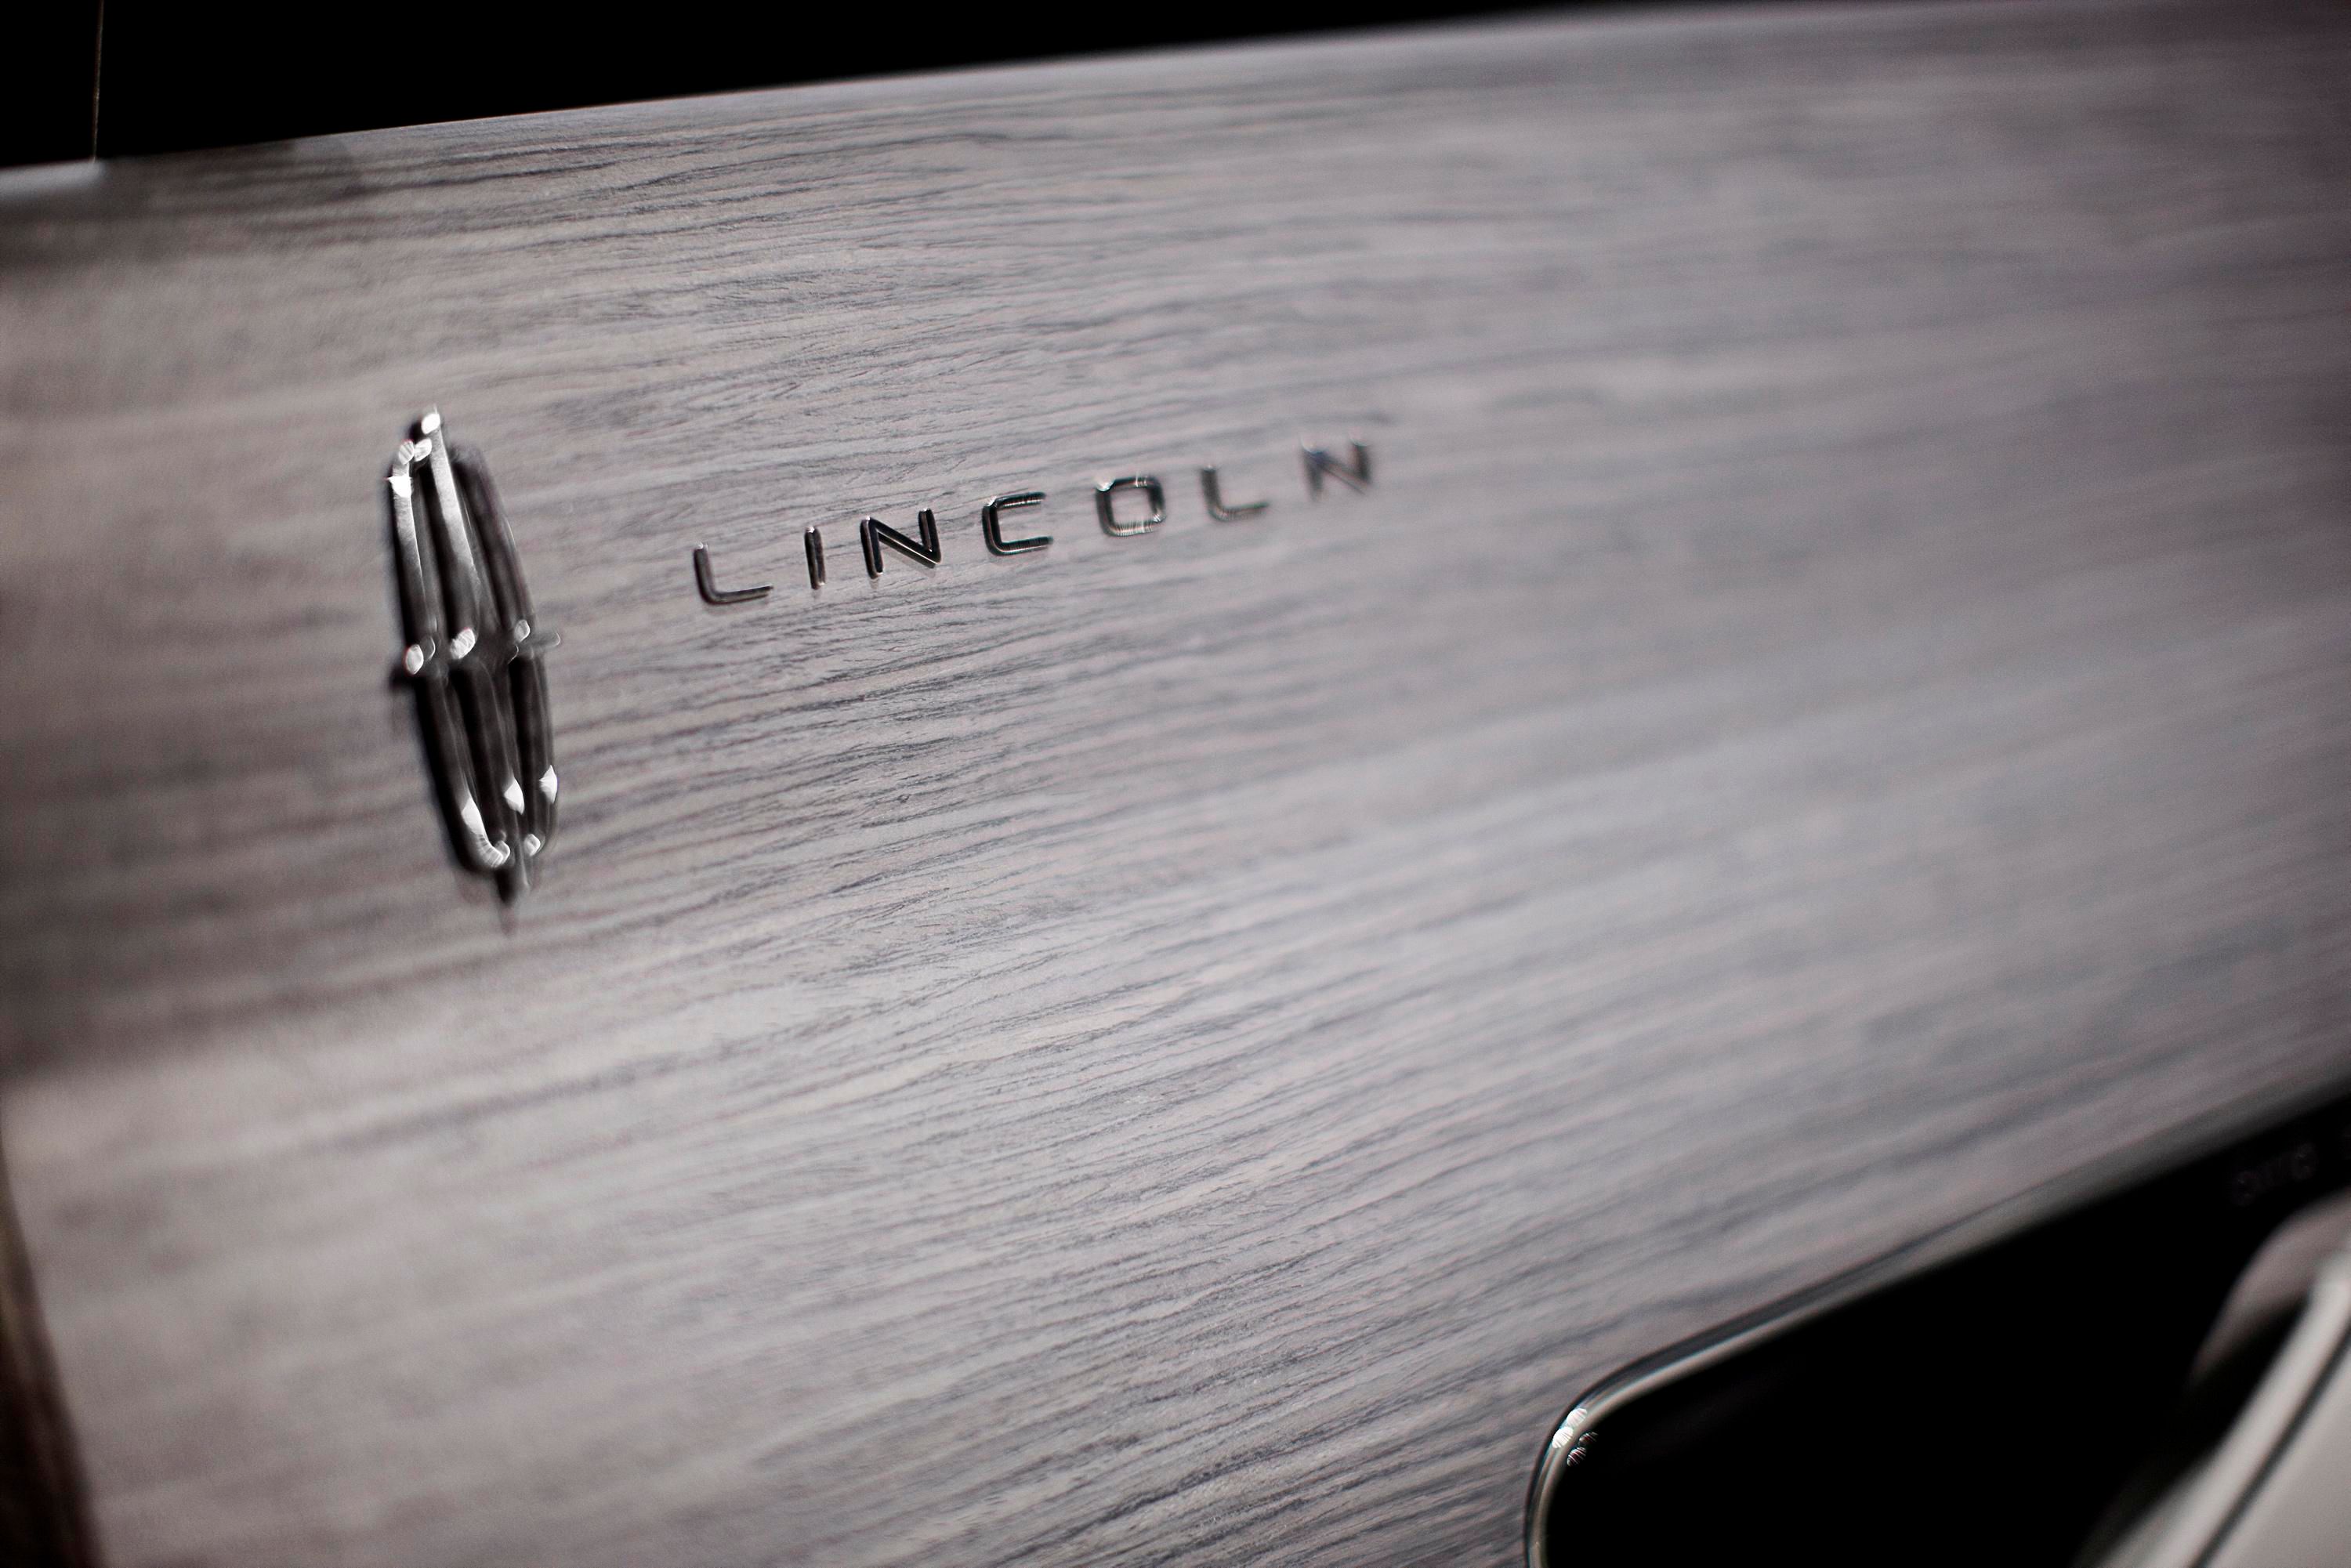 2009 Lincoln C concept